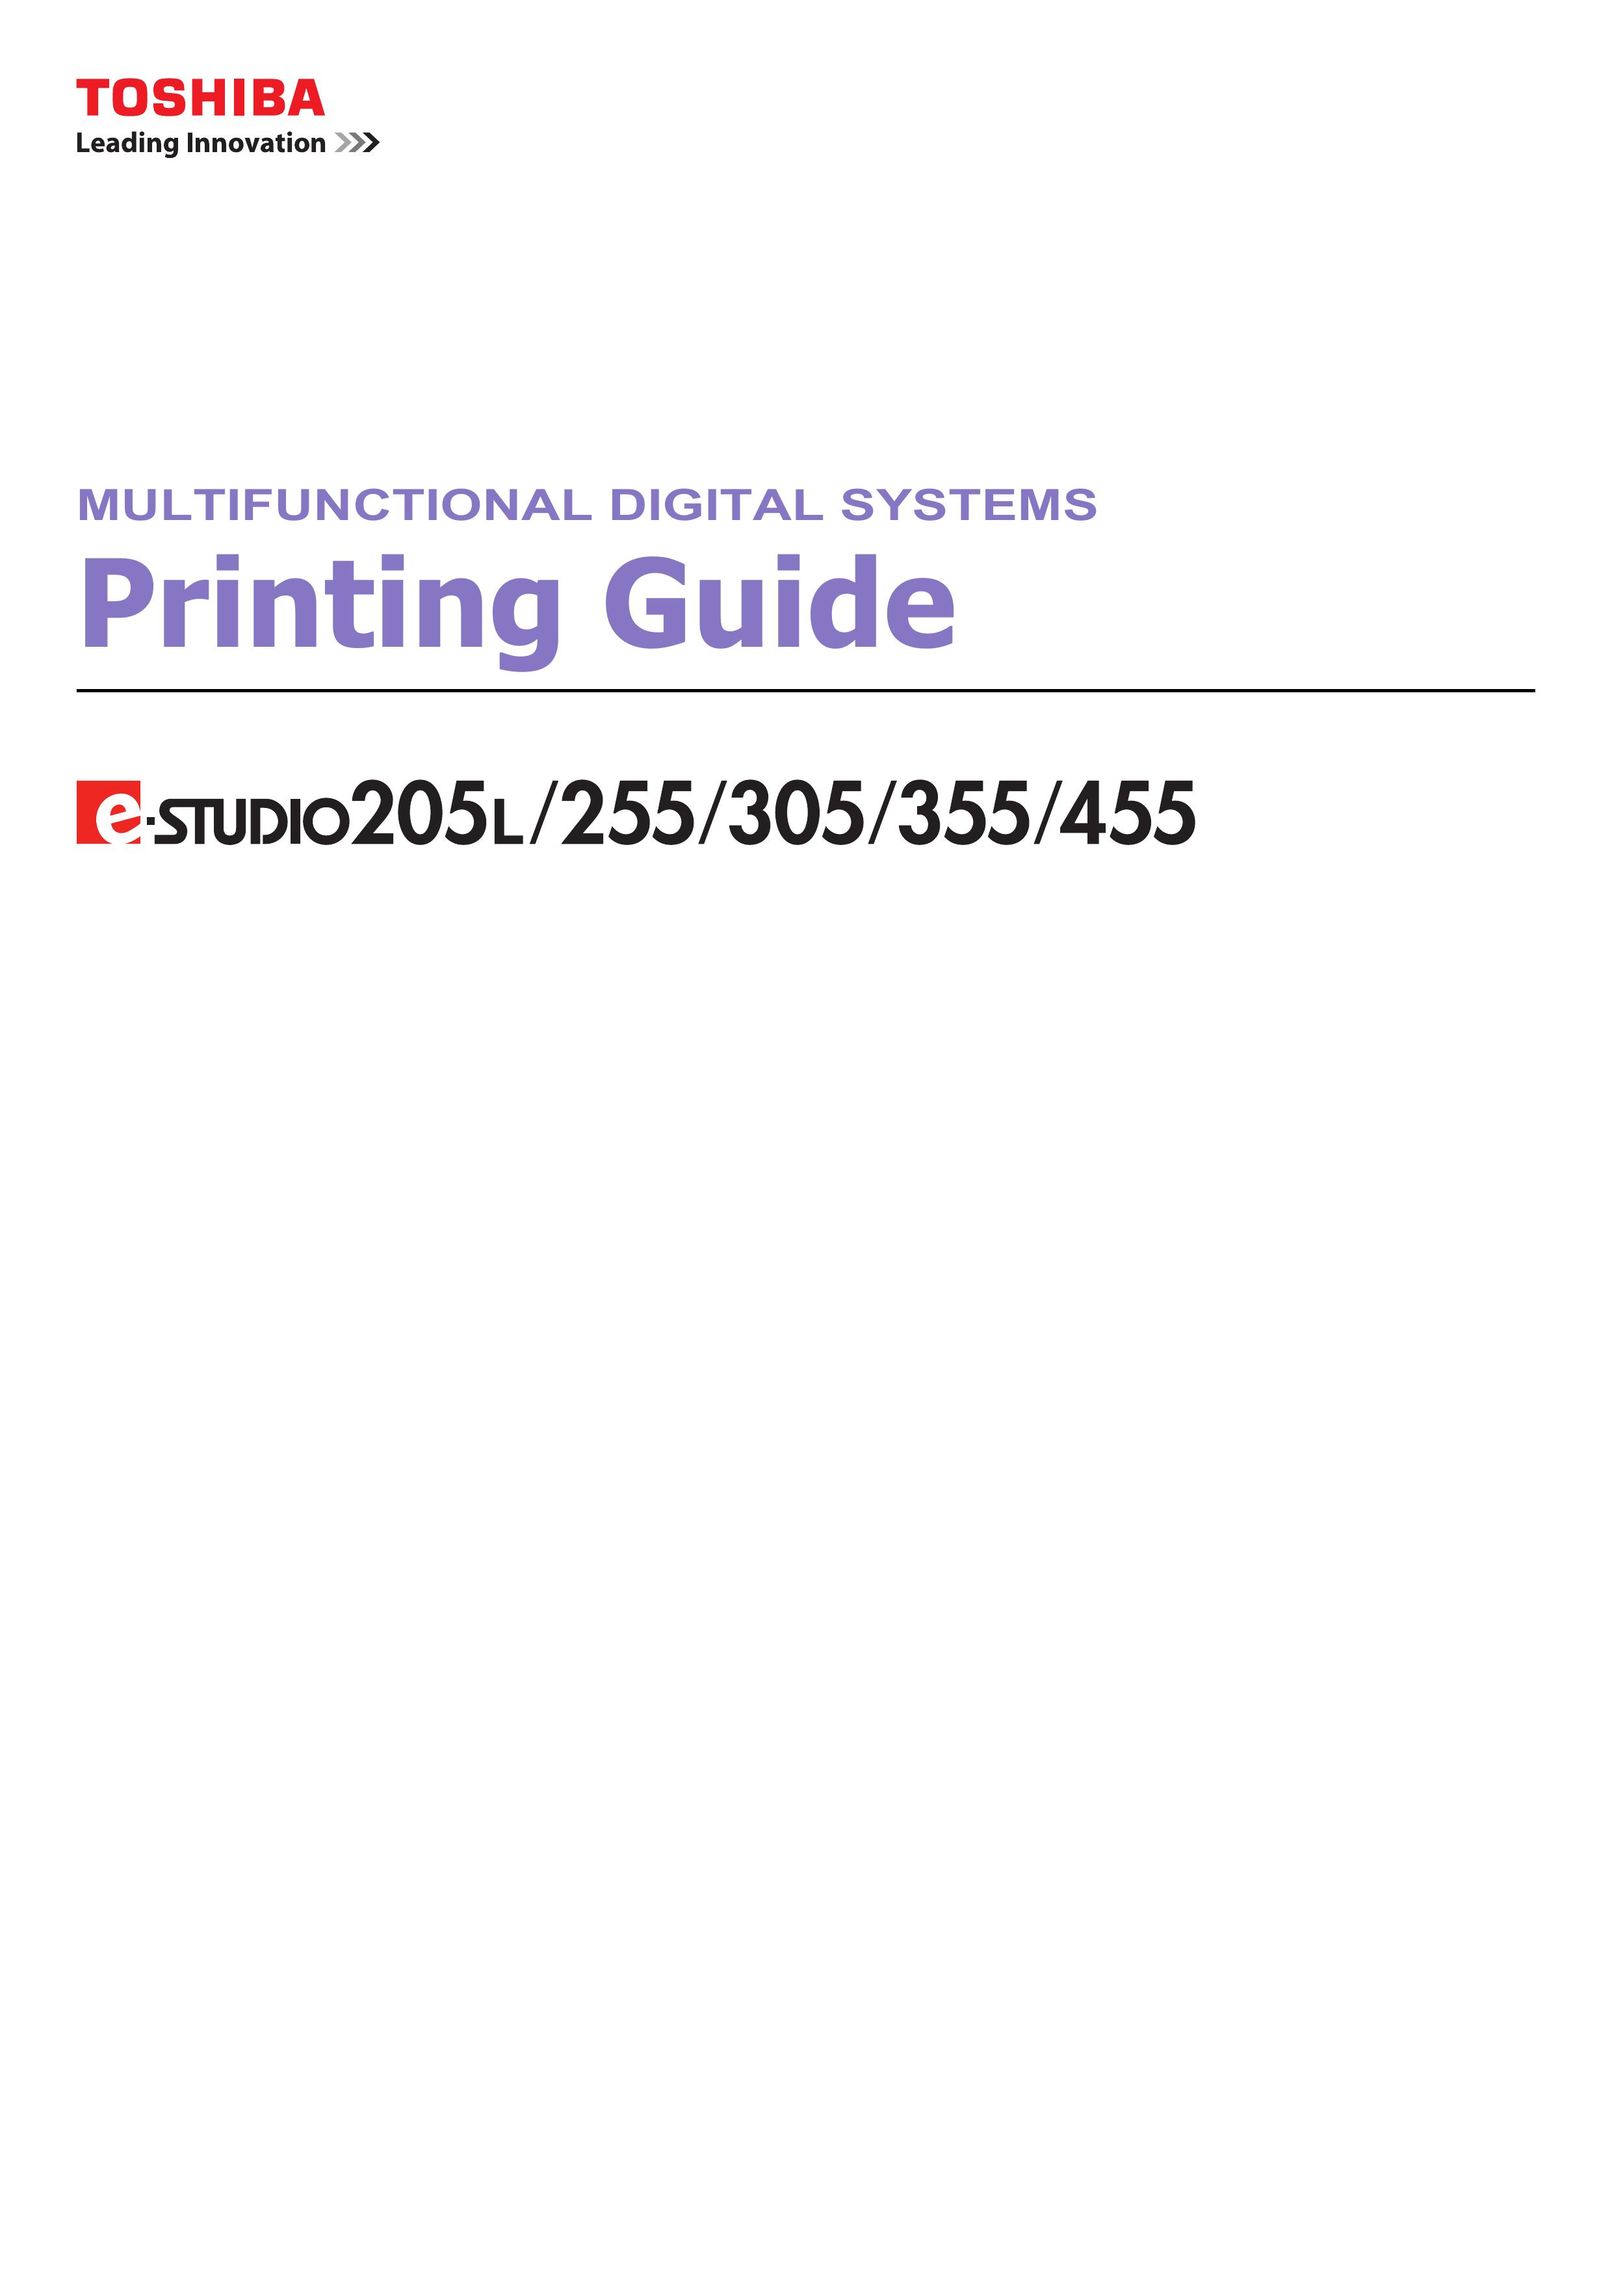 Toshiba 355 Printer User Manual